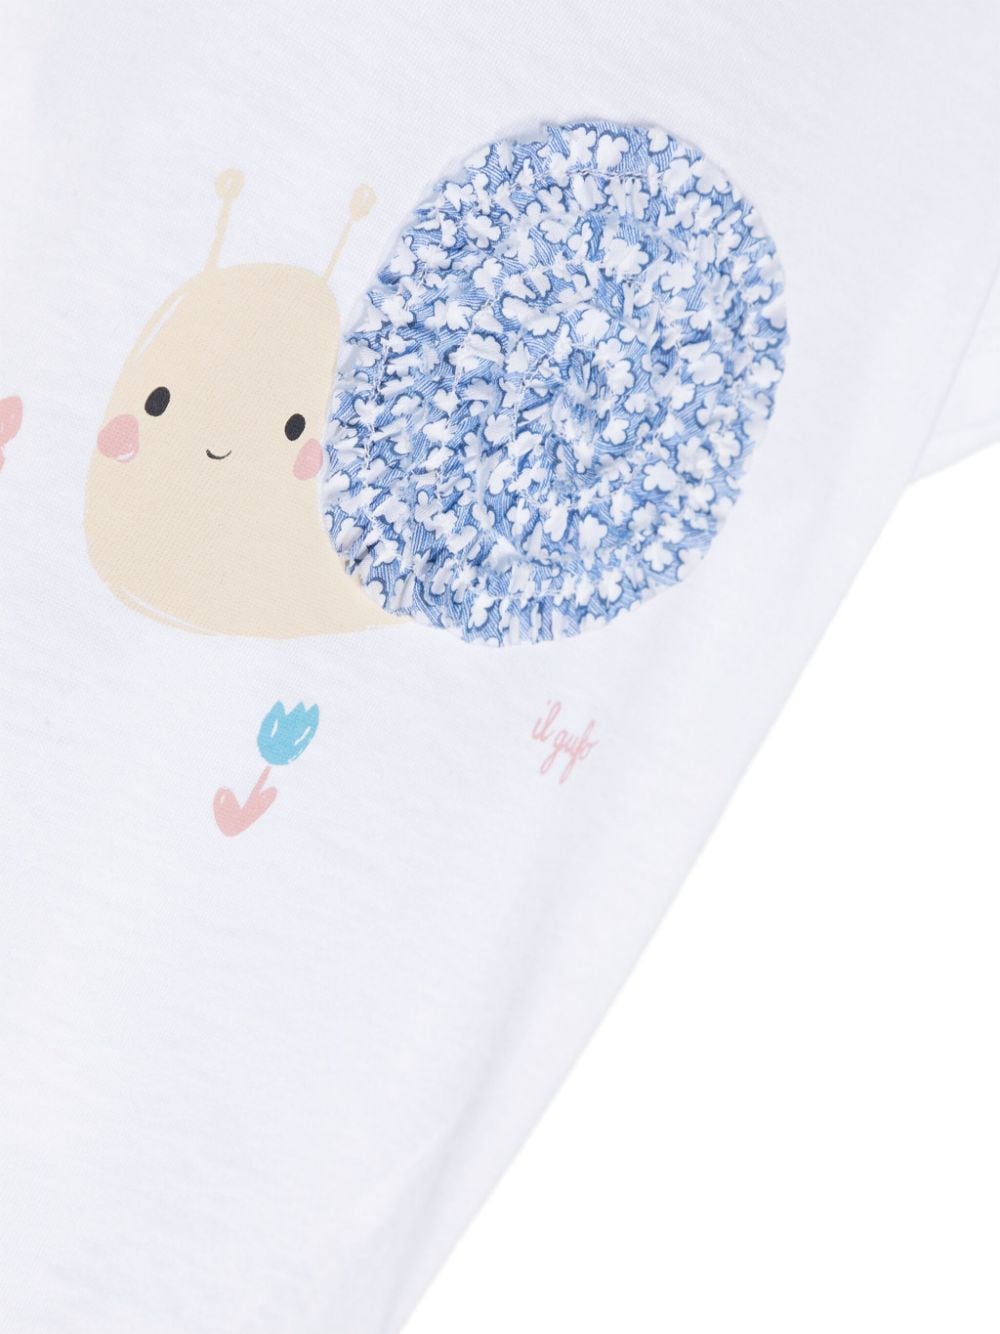 T-shirt bianca per neonata con stampa grafica